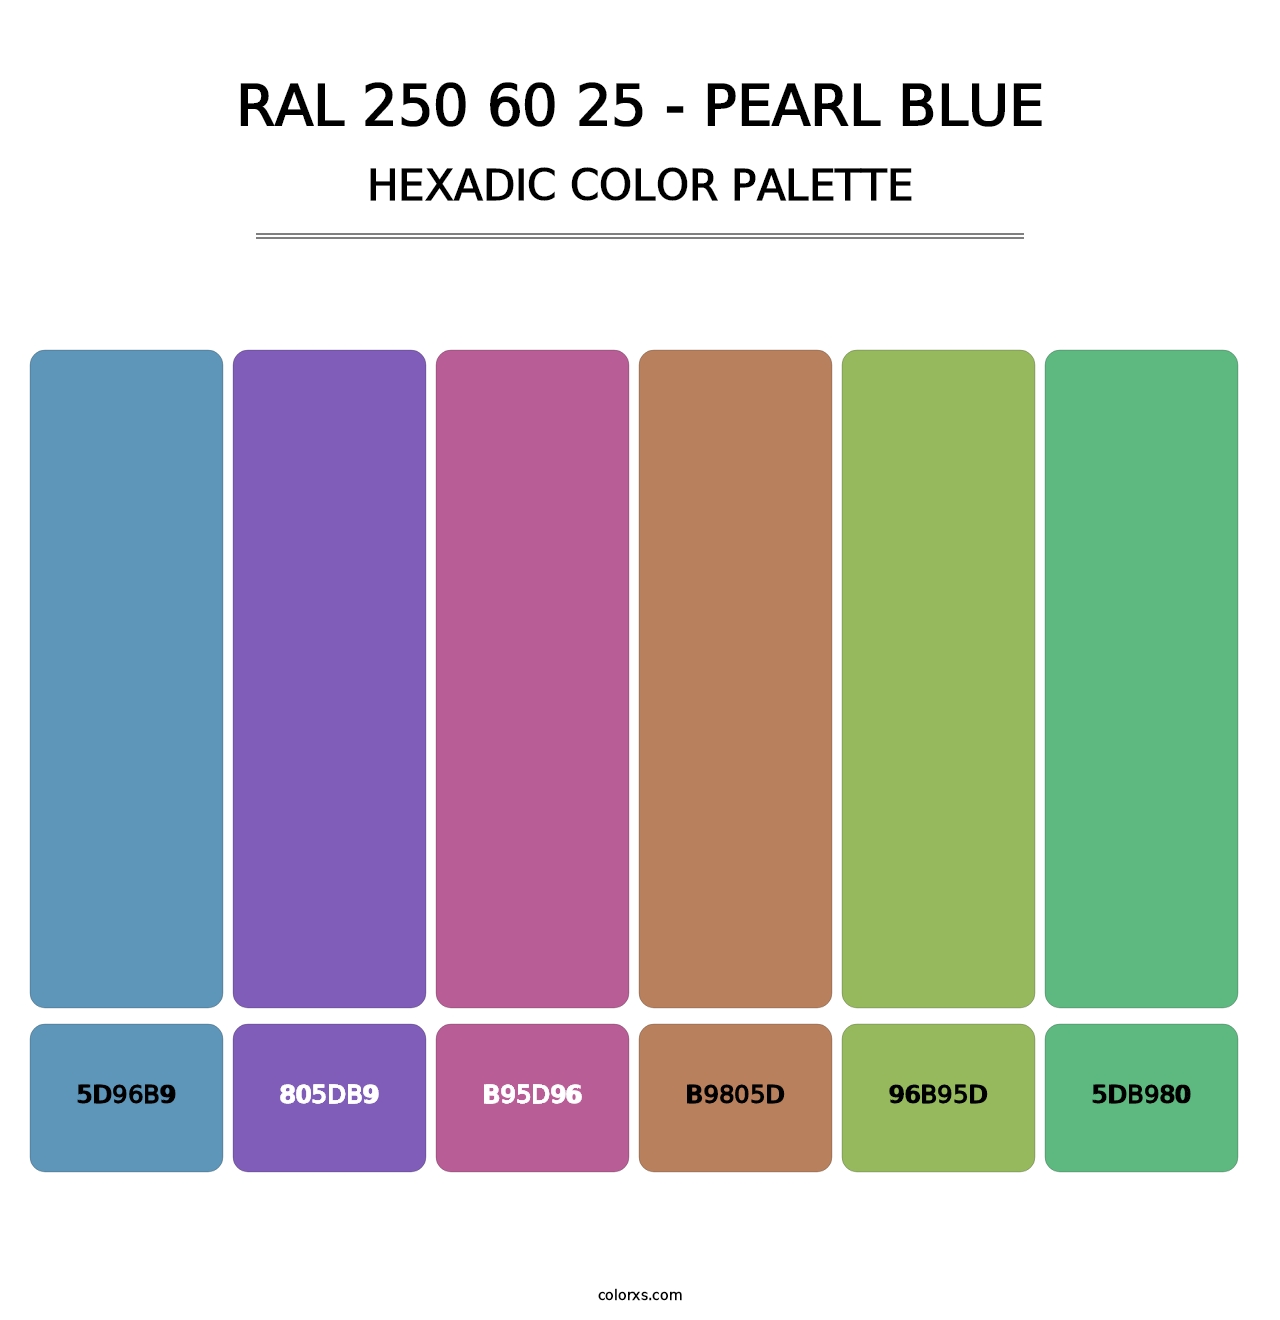 RAL 250 60 25 - Pearl Blue - Hexadic Color Palette